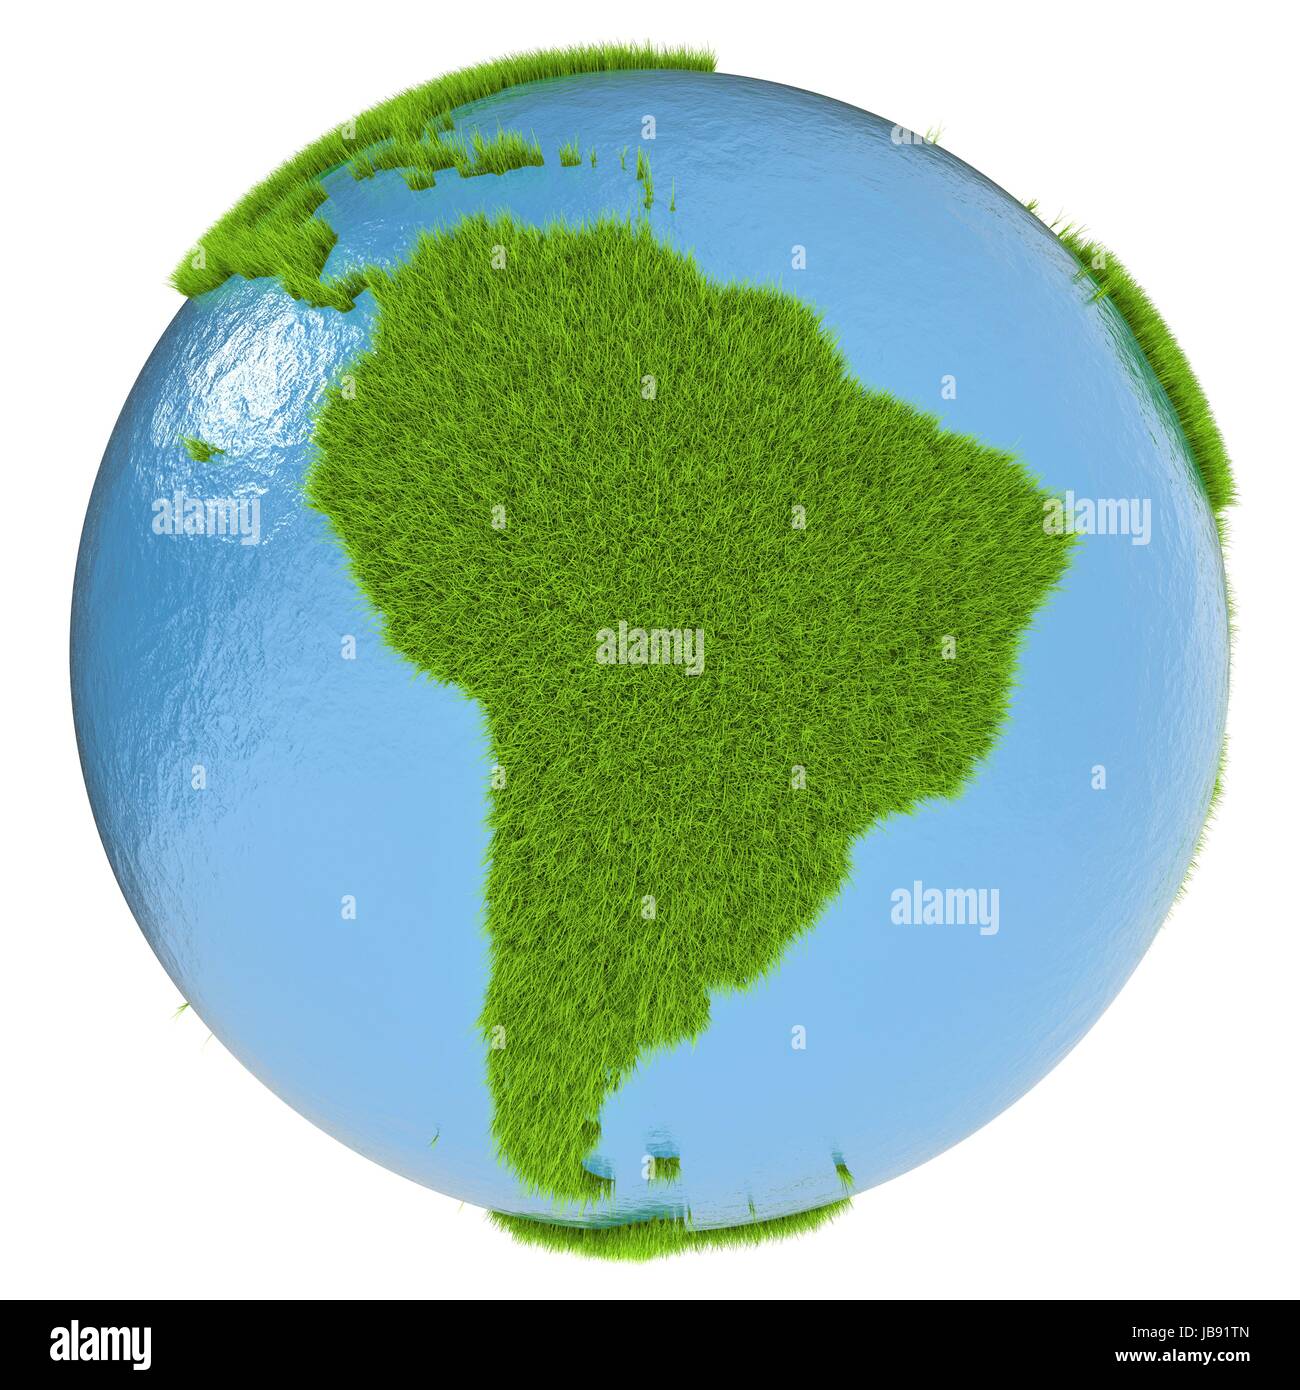 L'Amérique du Sud sur une planète couverte d'herbe verte isolée sur fond blanc. Concept de l'écologie et l'environnement propre. Éléments de cette image fournie par la NASA Banque D'Images